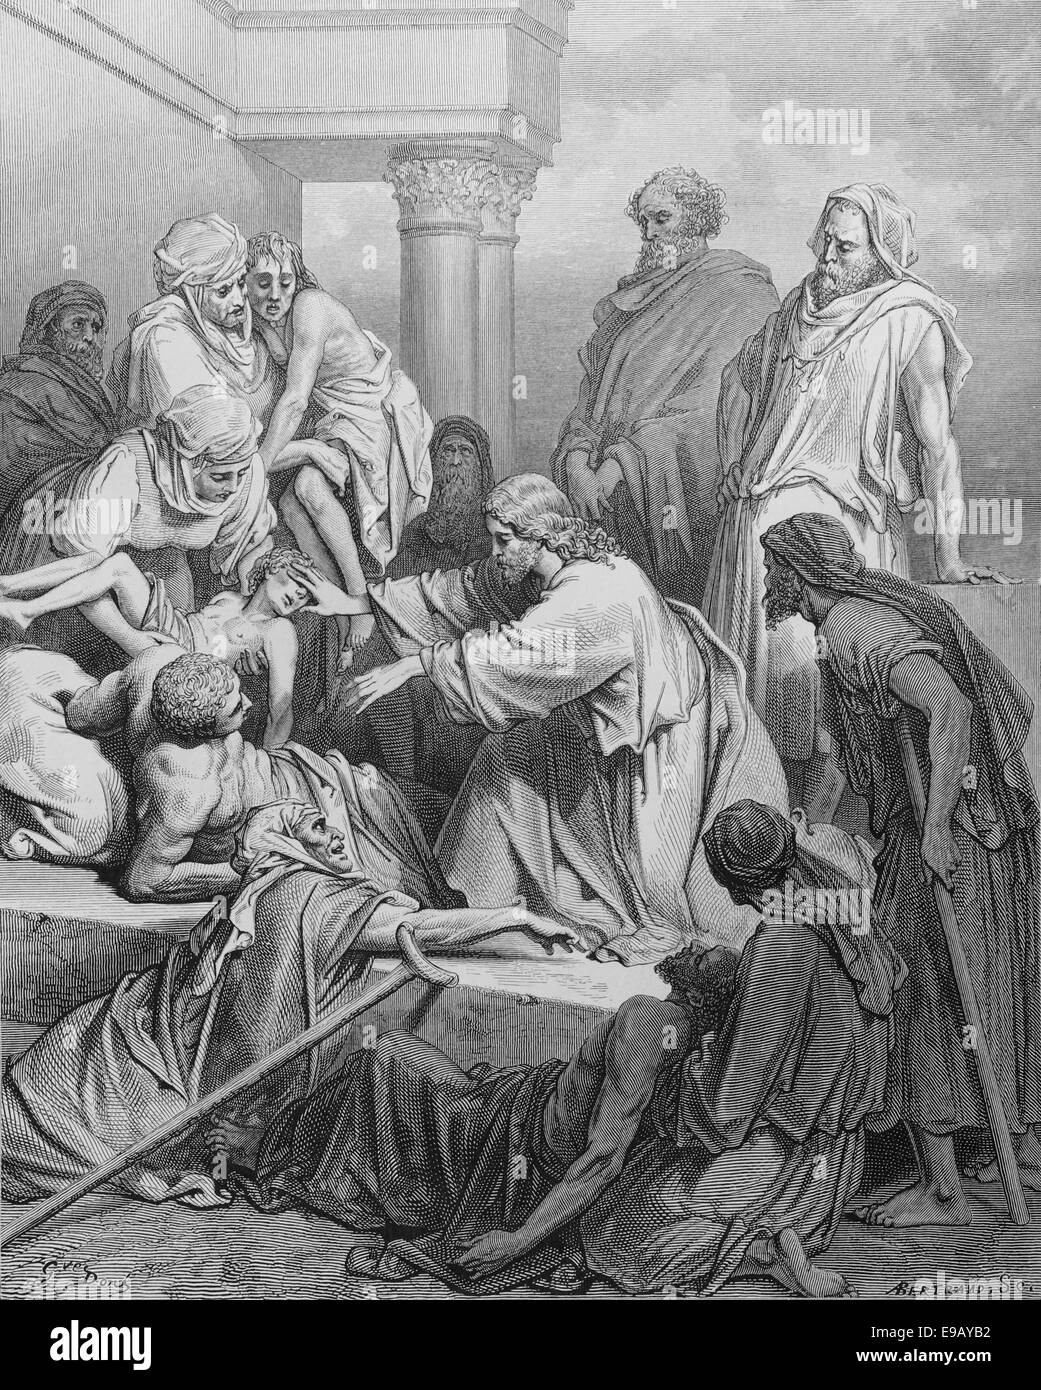 Illustrierte Bibel. Neuen Testaments. Jesus die Kranken zu heilen. Zeichnung von Gustave Dore (1832-1883). des 19. Jahrhunderts. Stockfoto